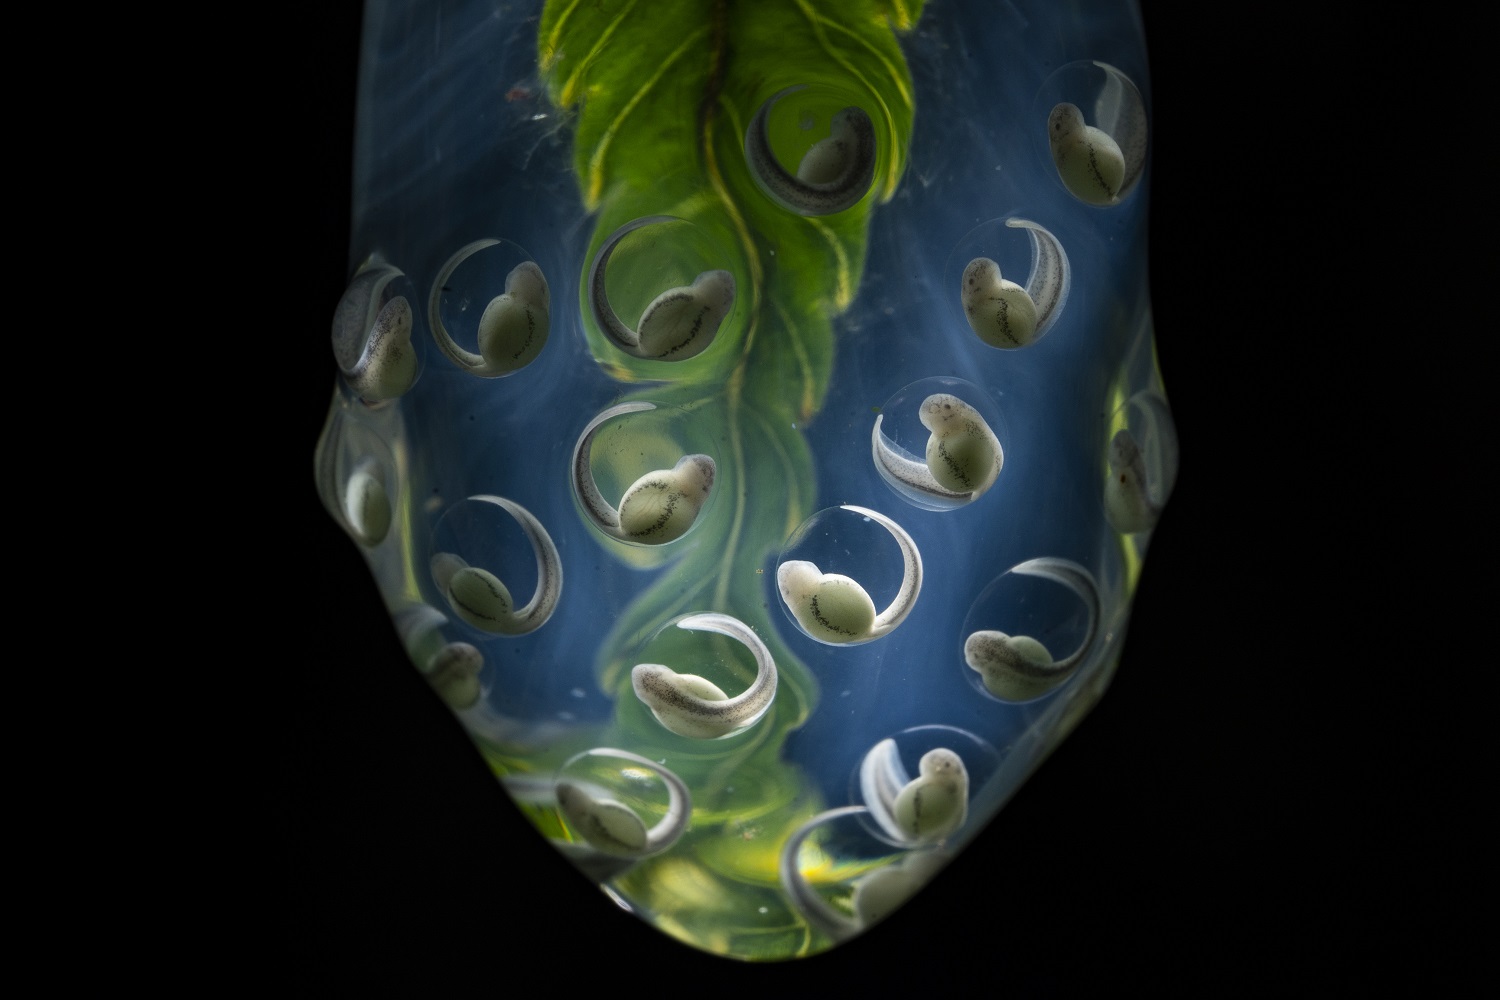 Glass frog eggs on a leaf tip